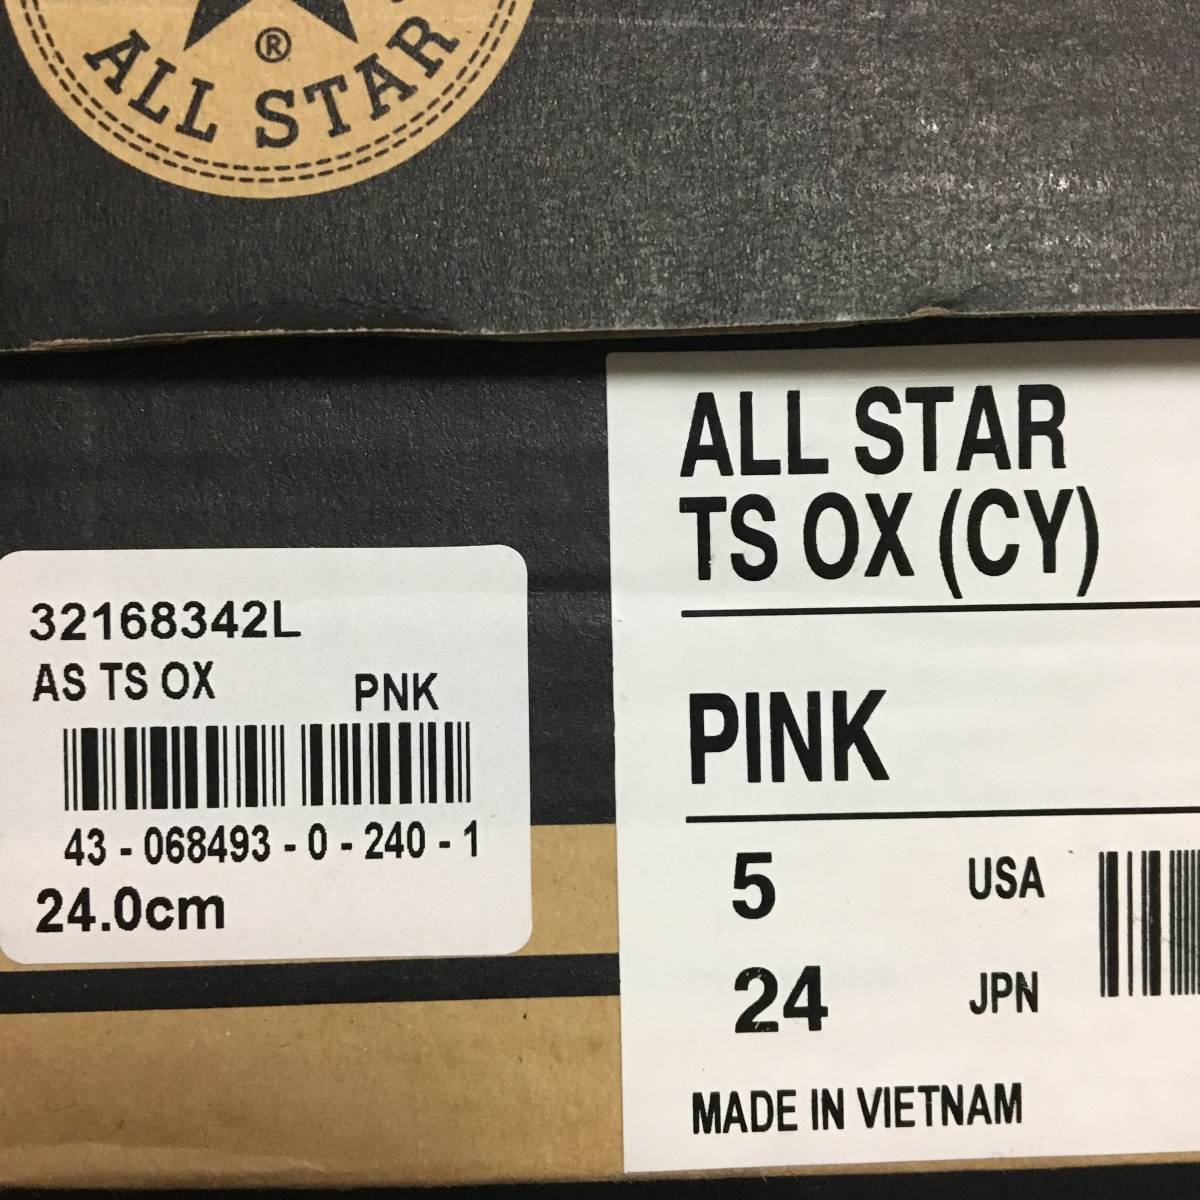 新品 24 CONVERSE ALL STAR TS OX (CY) コンバース オールスター PINK ピンク スニーカー ローカット_画像4